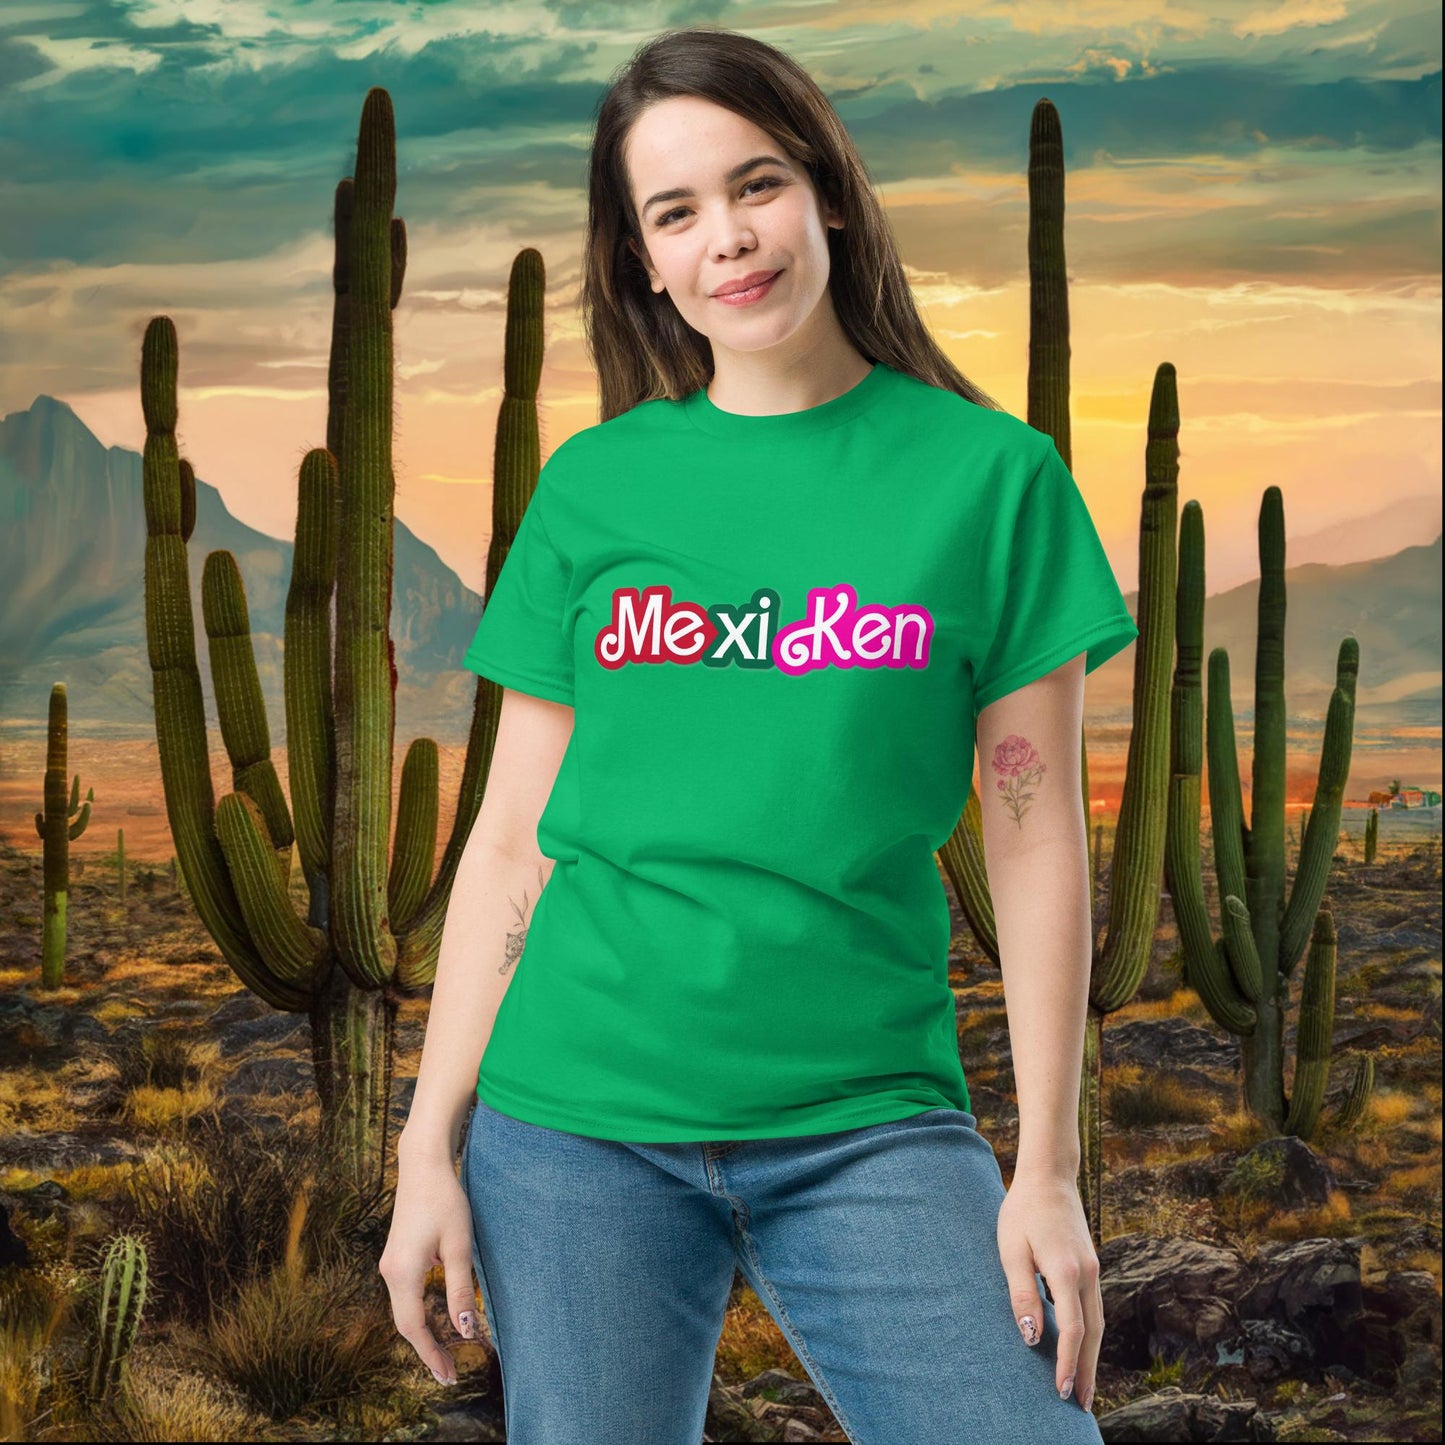 MexiKen Ken Barbie Mexico Mexican Mexicana Latino Latina Latinx tee Next Cult Brand